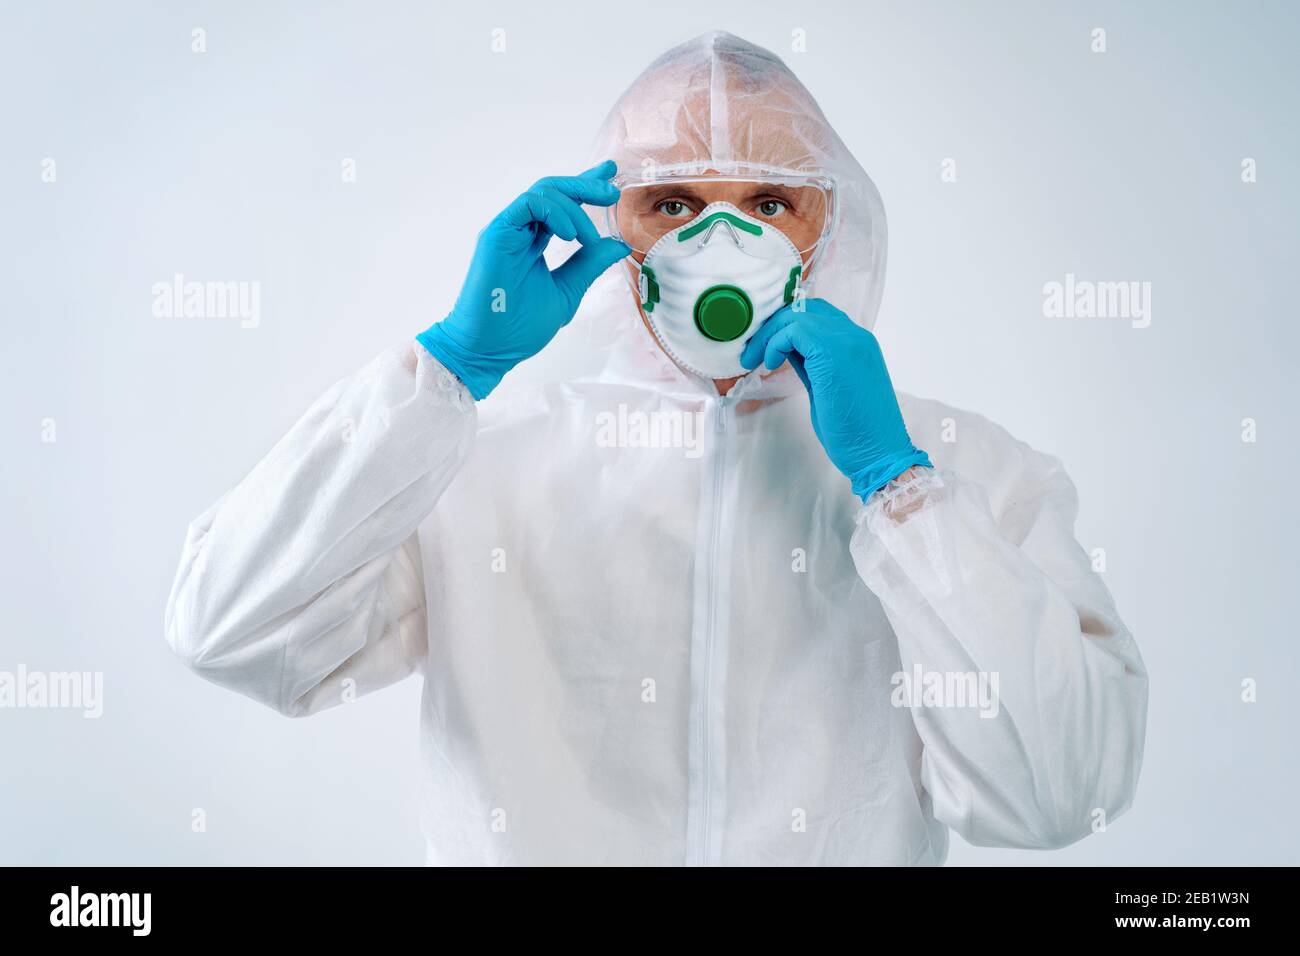 Operatore sanitario in tuta protettiva e maschera medica pronto al lavoro. Concetto di assistenza sanitaria. Foto Stock